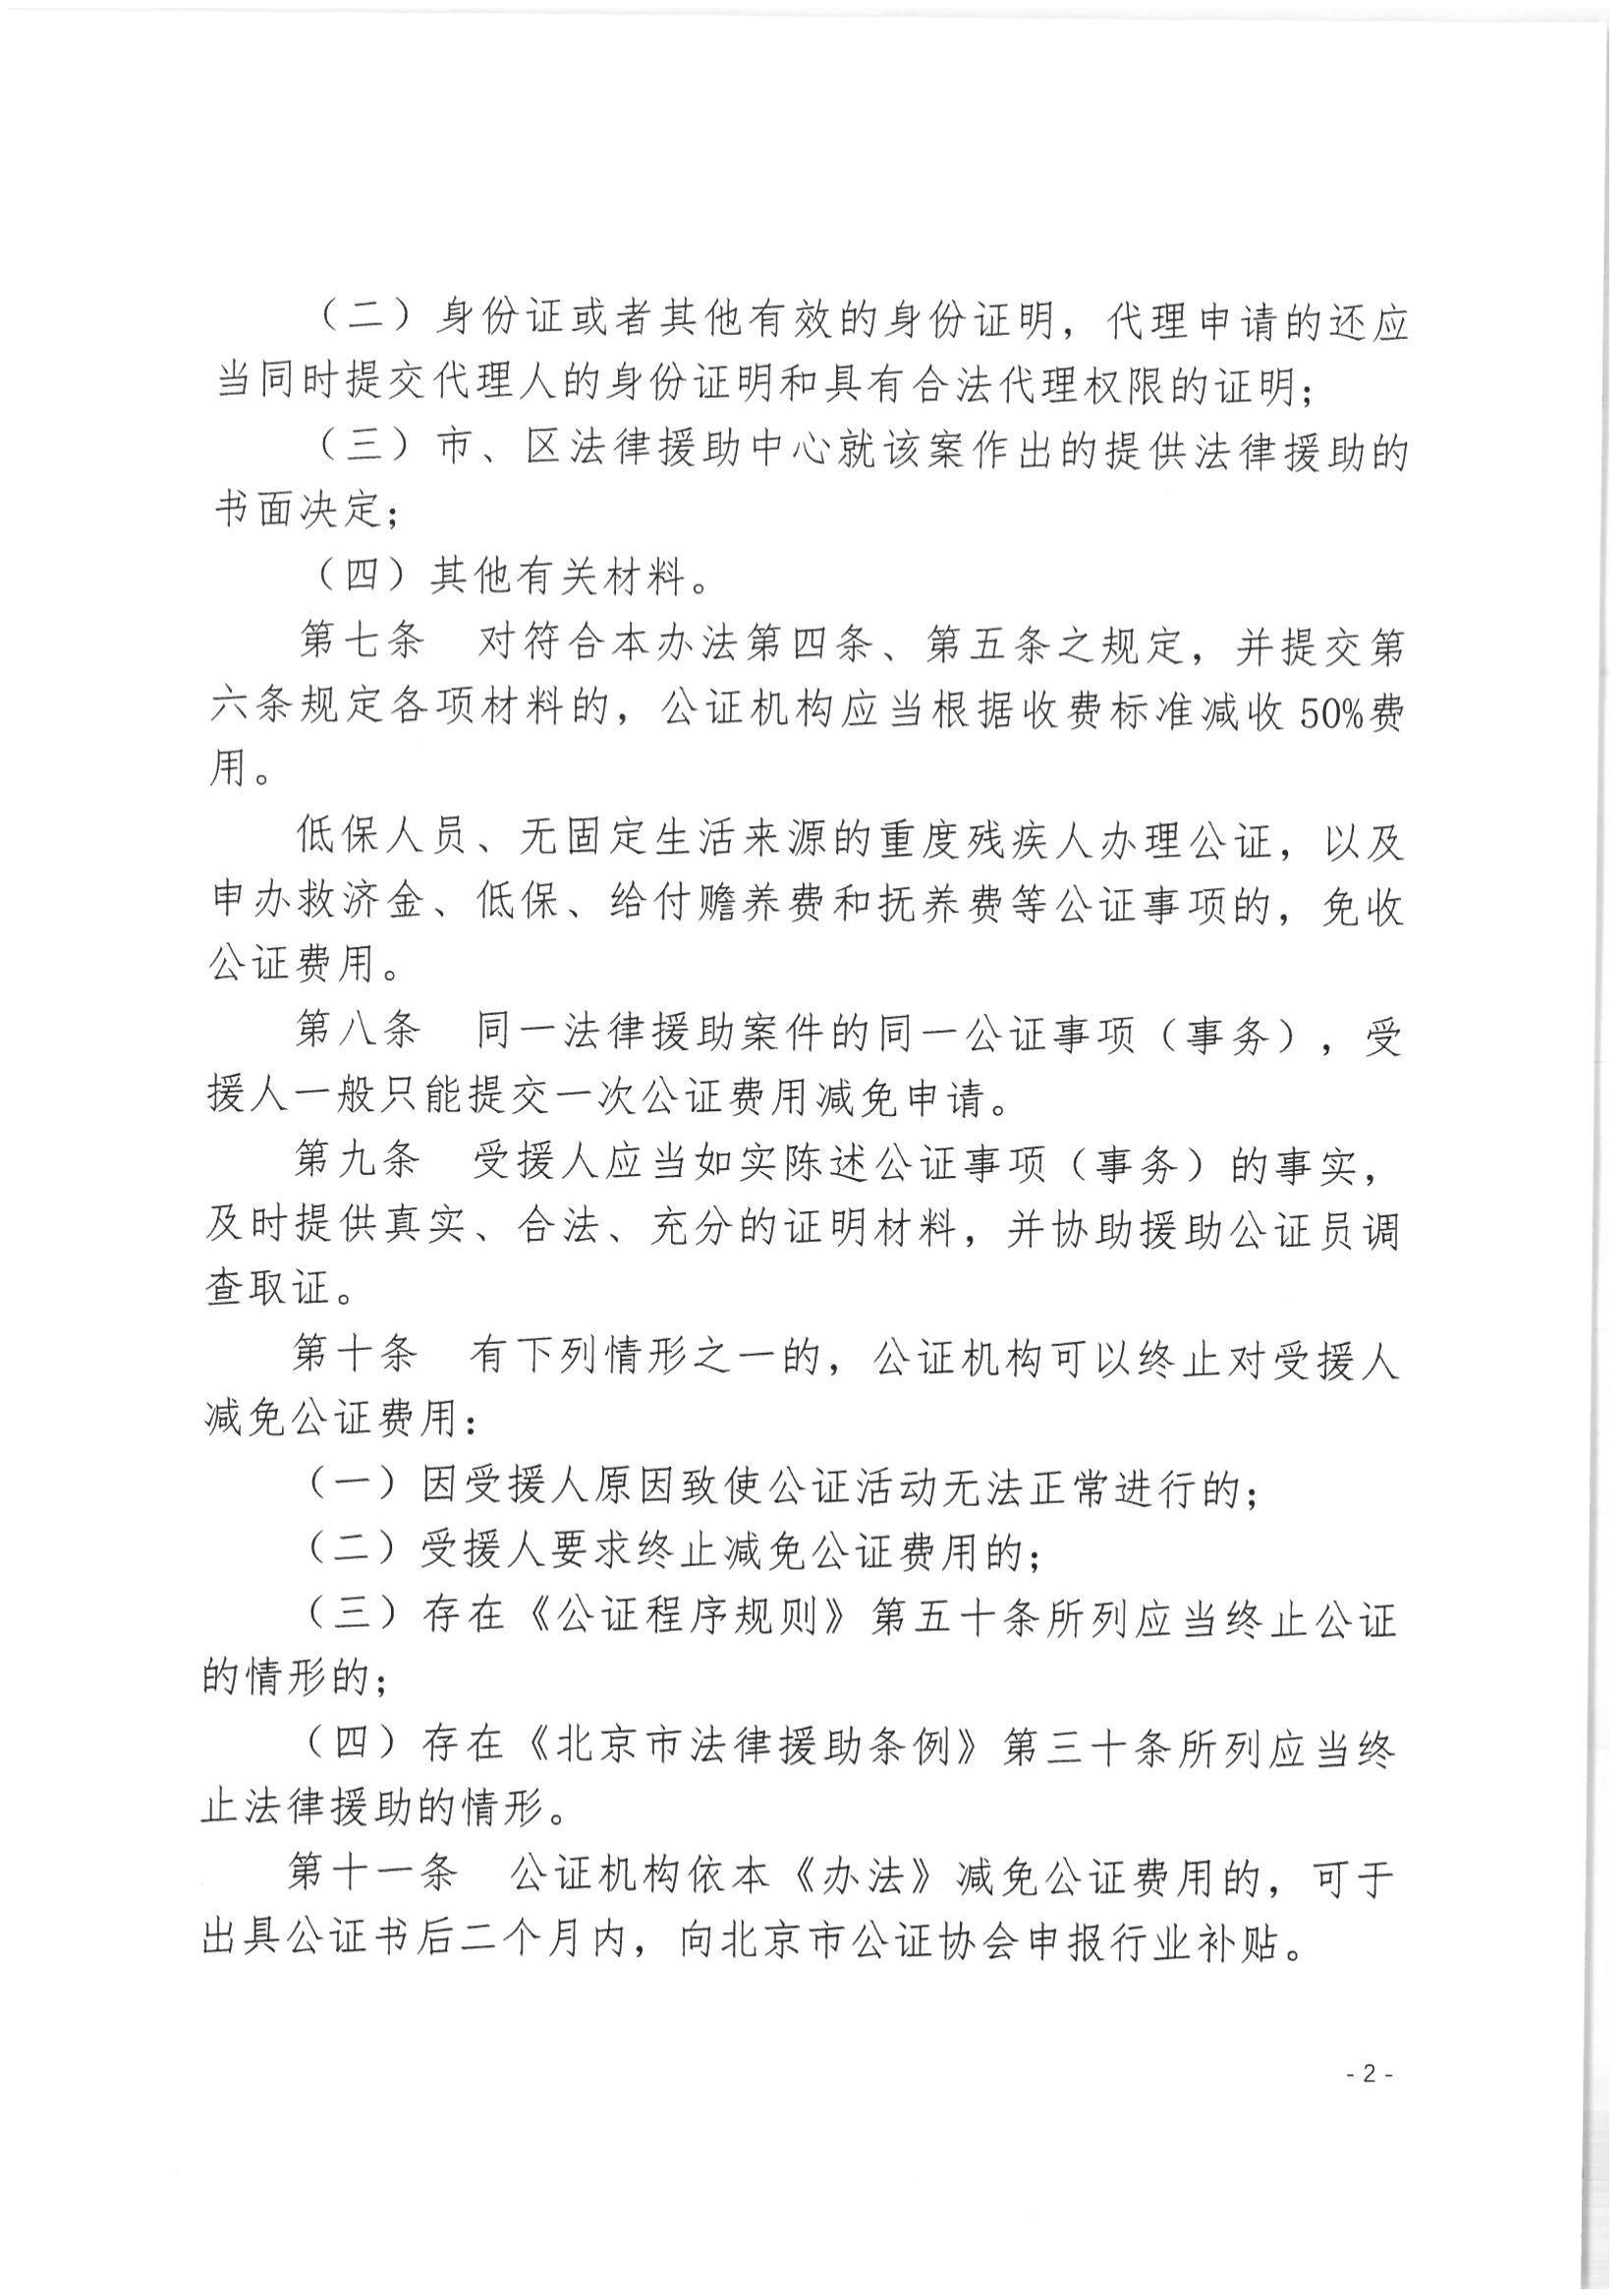 北京市公证协会关于印发《北京市公证协会关于在公证行业开展法律援助的工作办法（试行）》的通知(1)_02